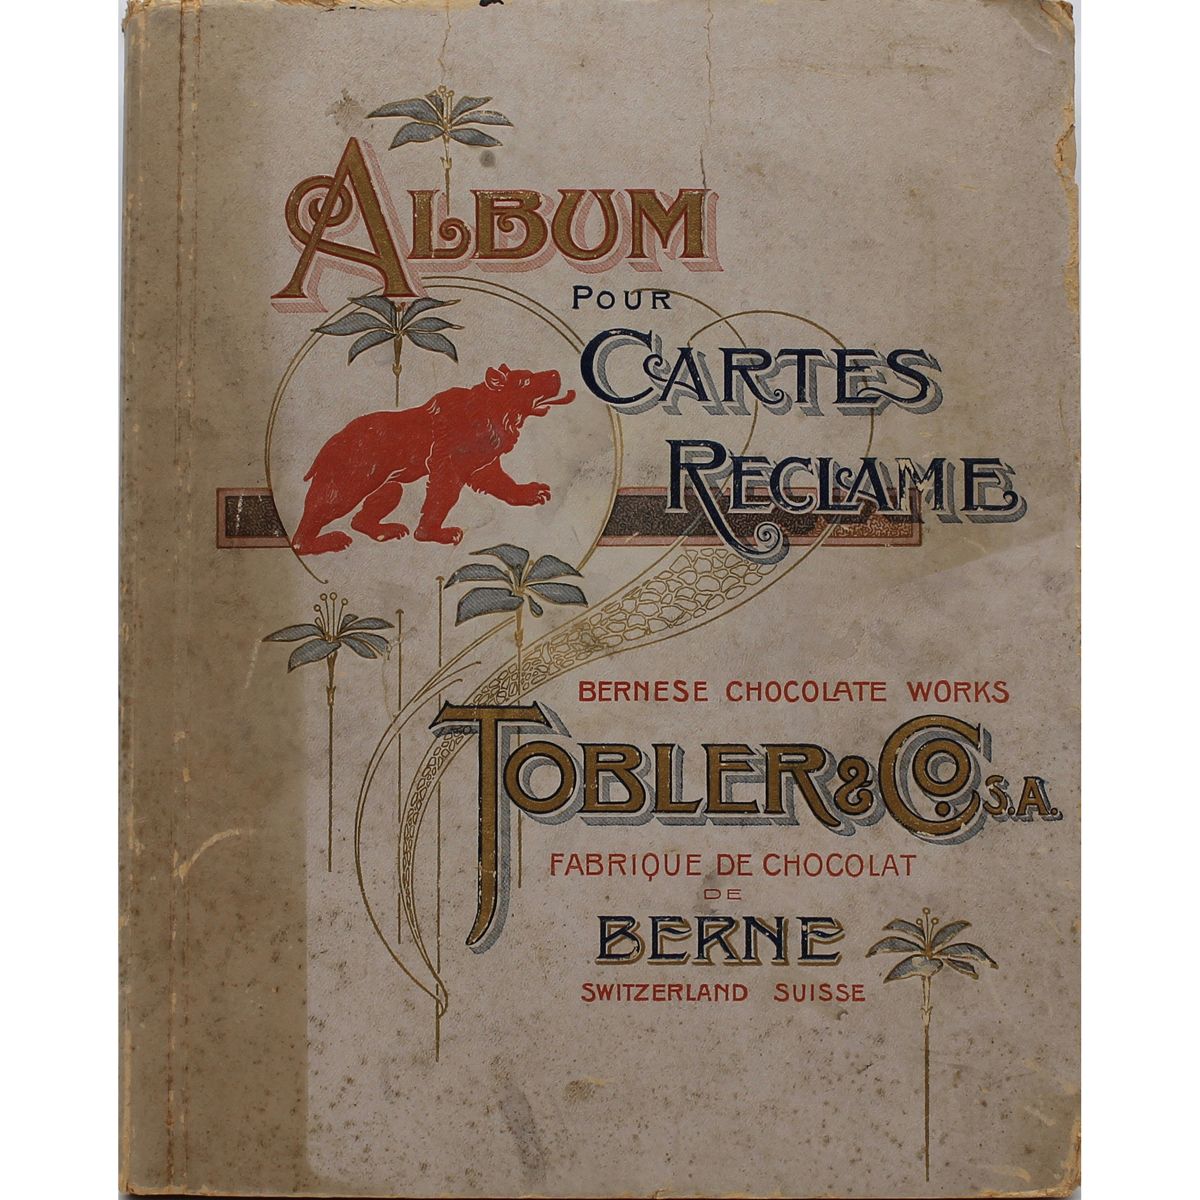 ALBUM POUR CARTES RECLAME "Tobler & Co." Anfang des 20. Jahrhunderts
Anfang des &hellip;